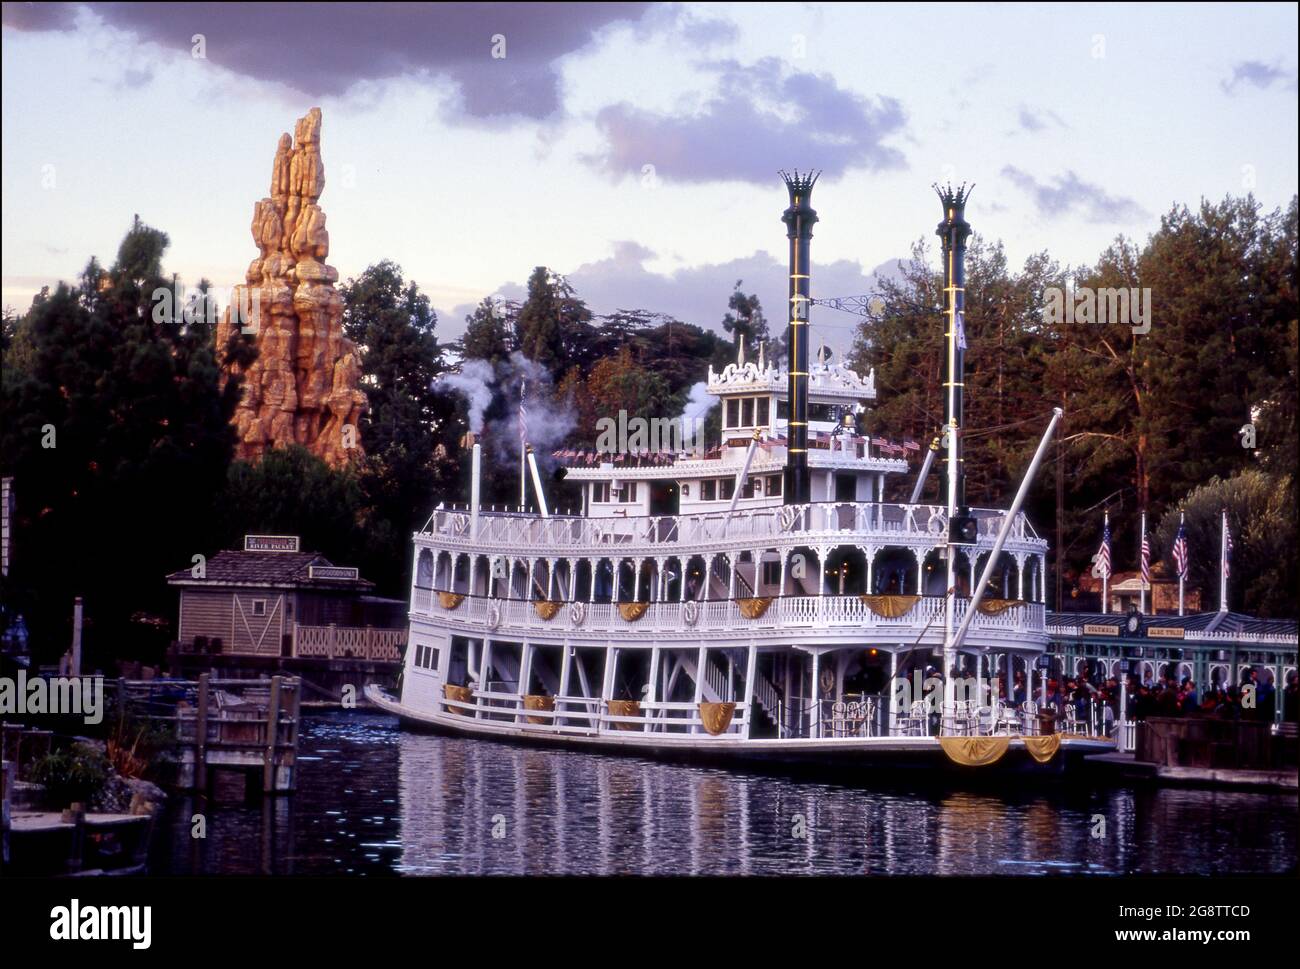 Promenade en bateau sur le fleuve à Disneyland vers 1980 Banque D'Images